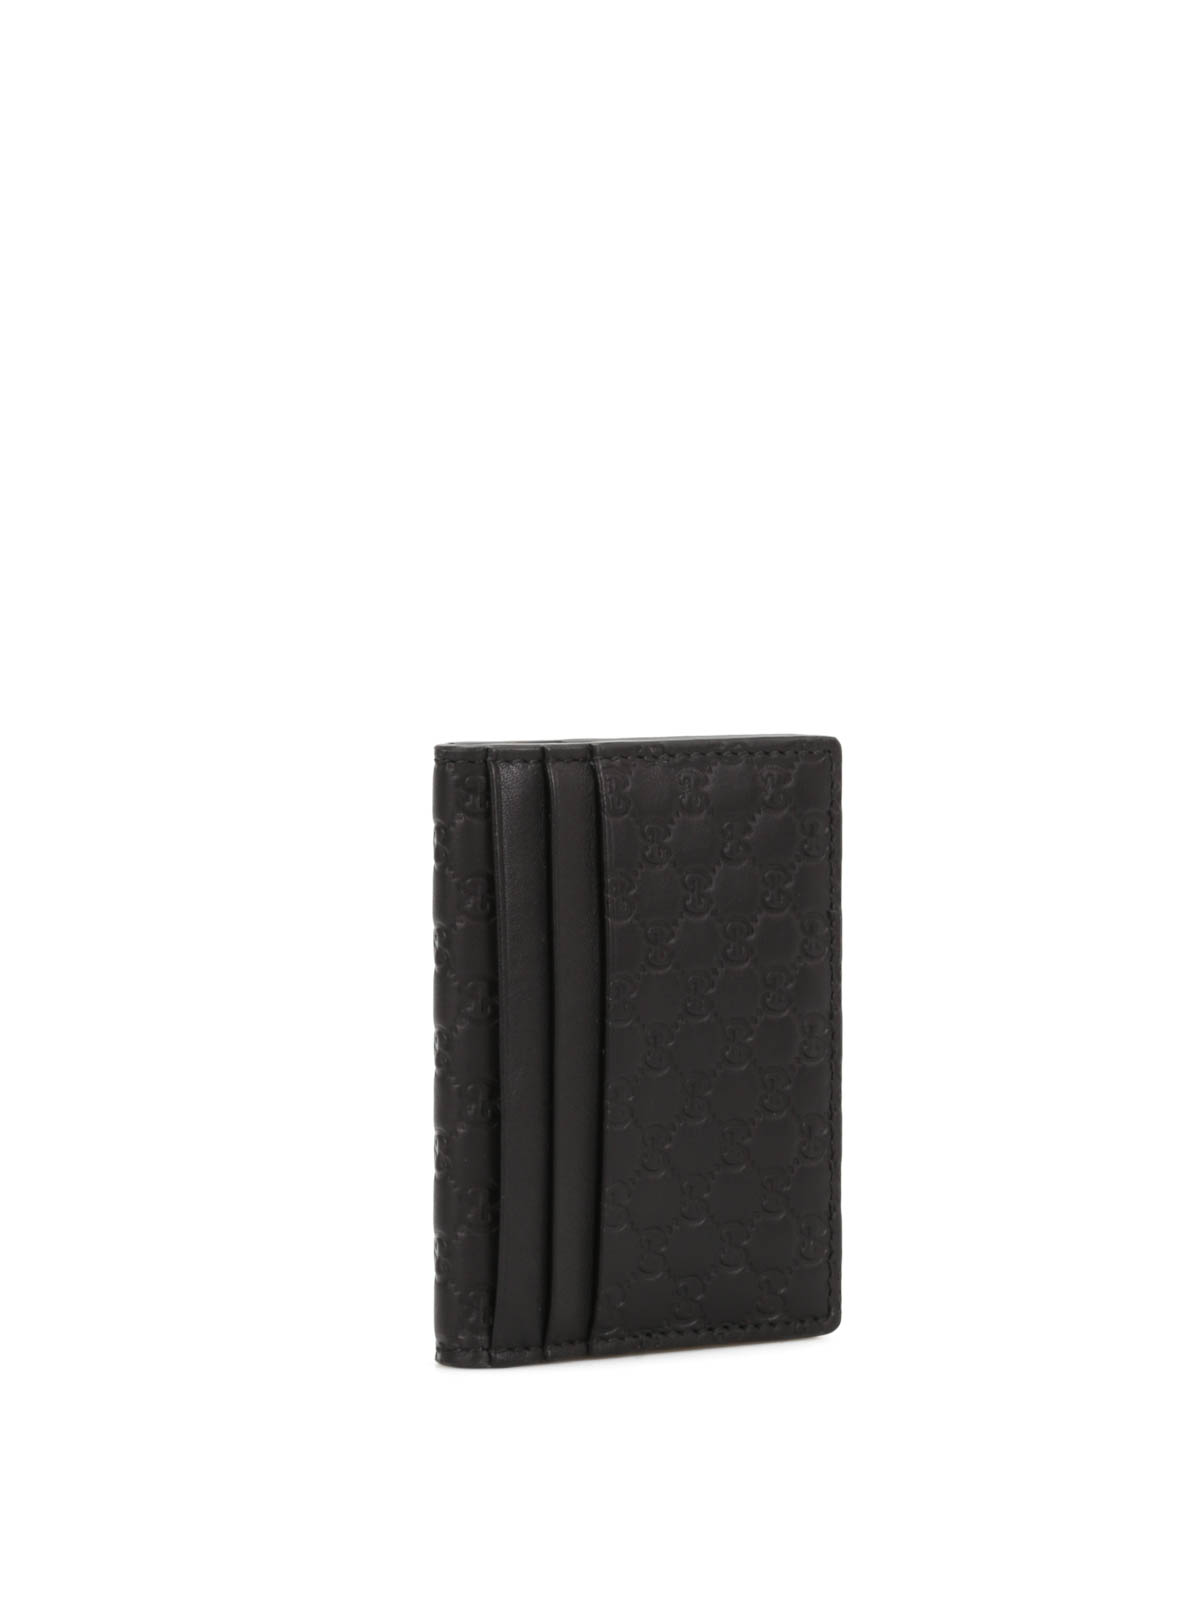 Gucci Black Microguccissima Leather Money Clip Bifold Wallet Gucci